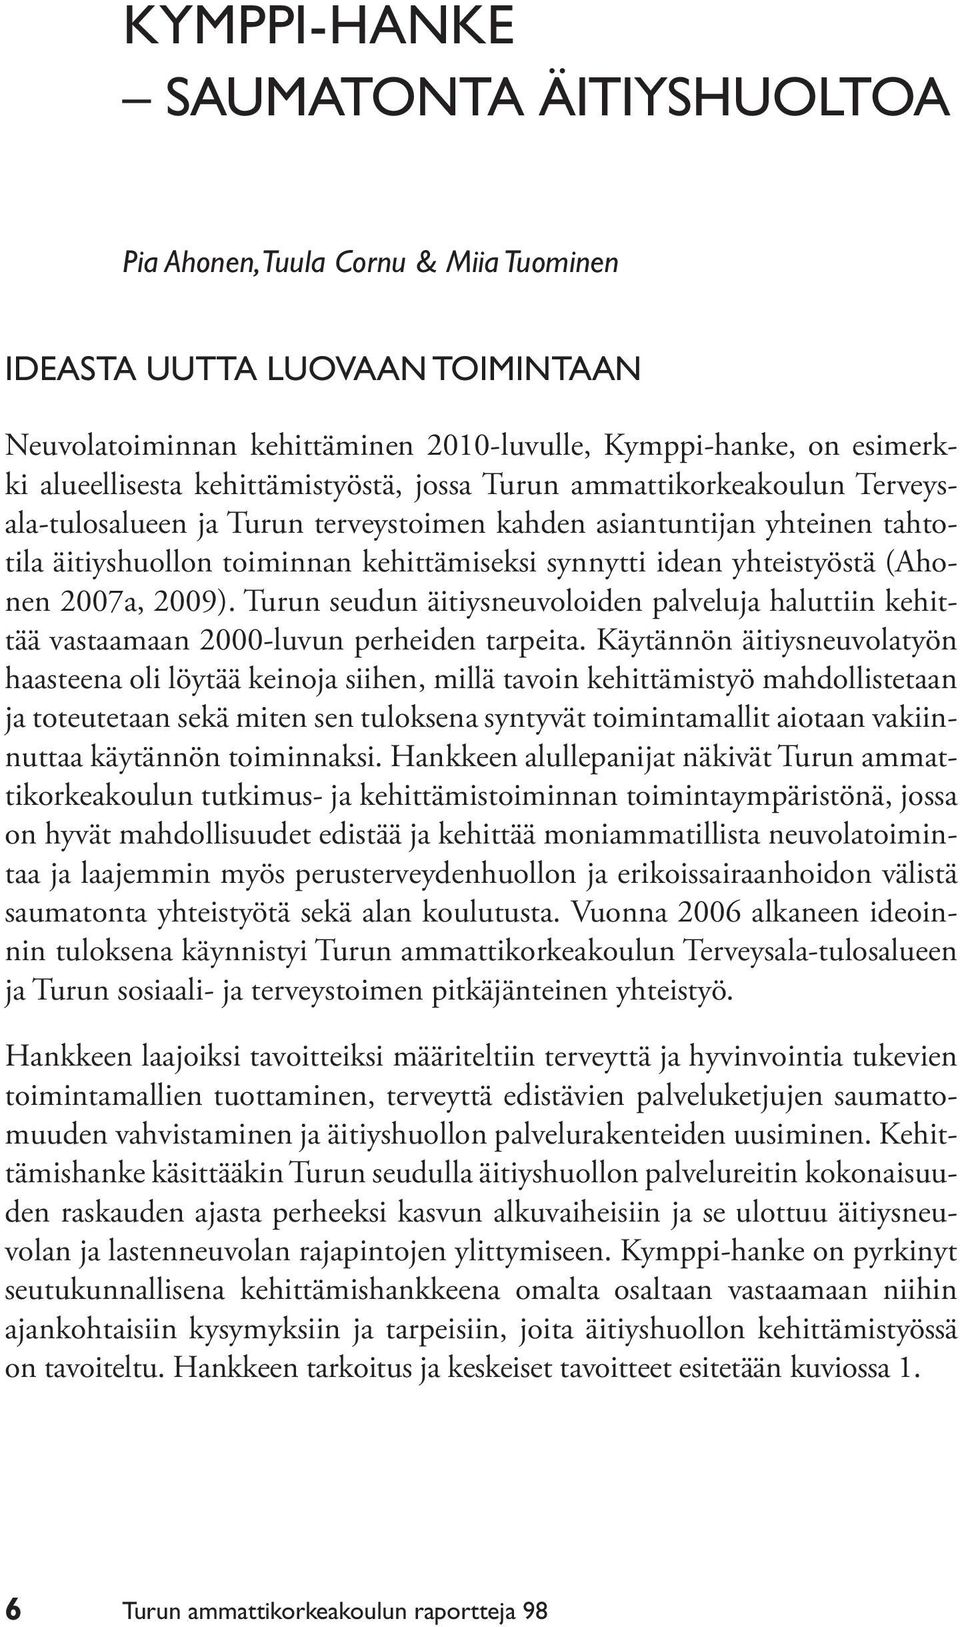 yhteistyöstä (Ahonen 2007a, 2009). Turun seudun äitiysneuvoloiden palveluja haluttiin kehittää vastaamaan 2000-luvun perheiden tarpeita.